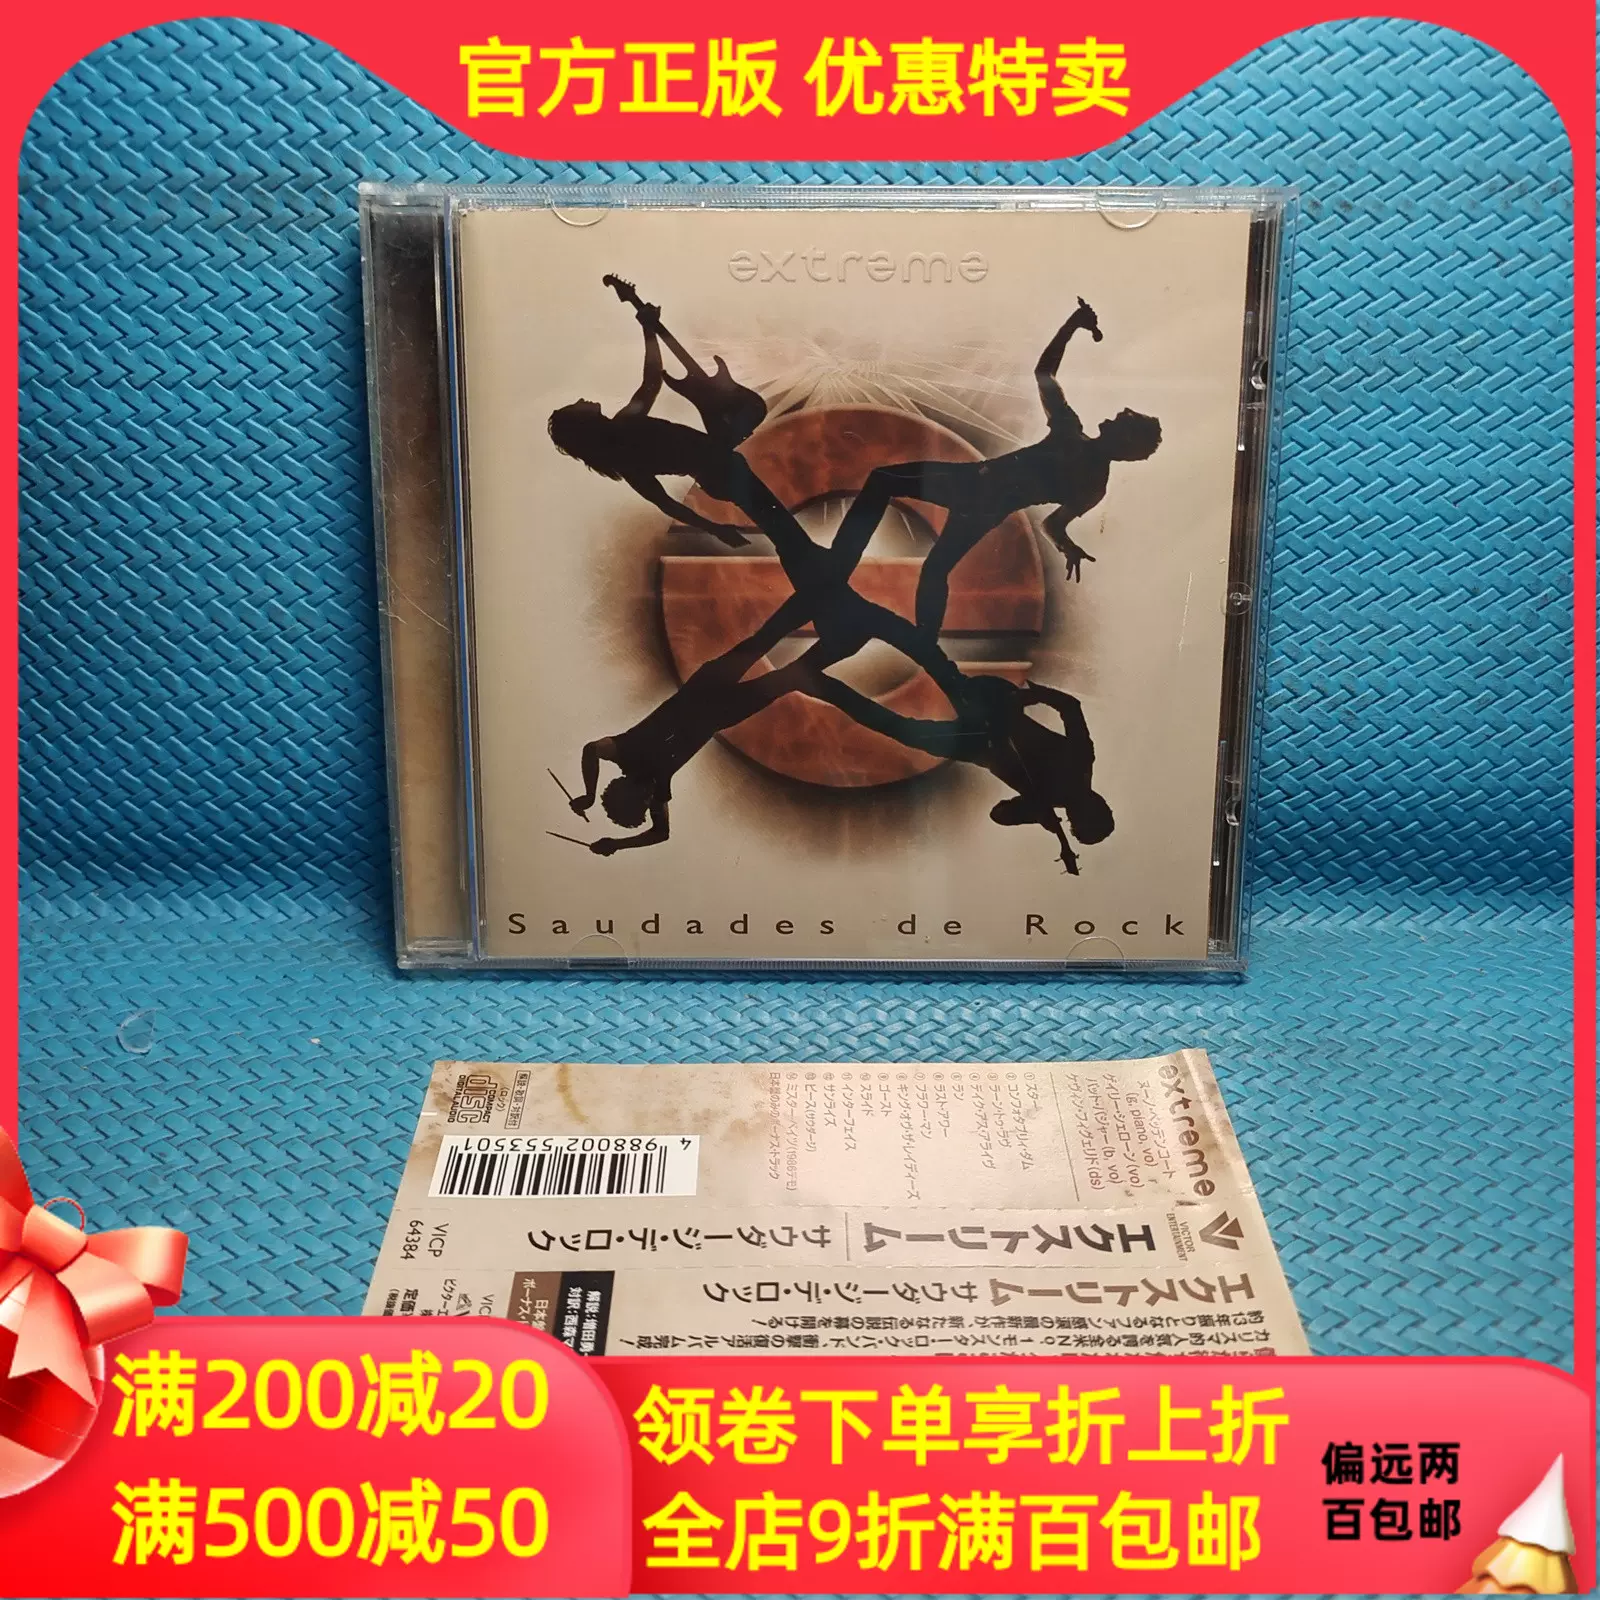 正版CD硬核瘋克重金屬搖滾極端樂隊Extreme 懷舊者的搖滾帶側標- Taobao